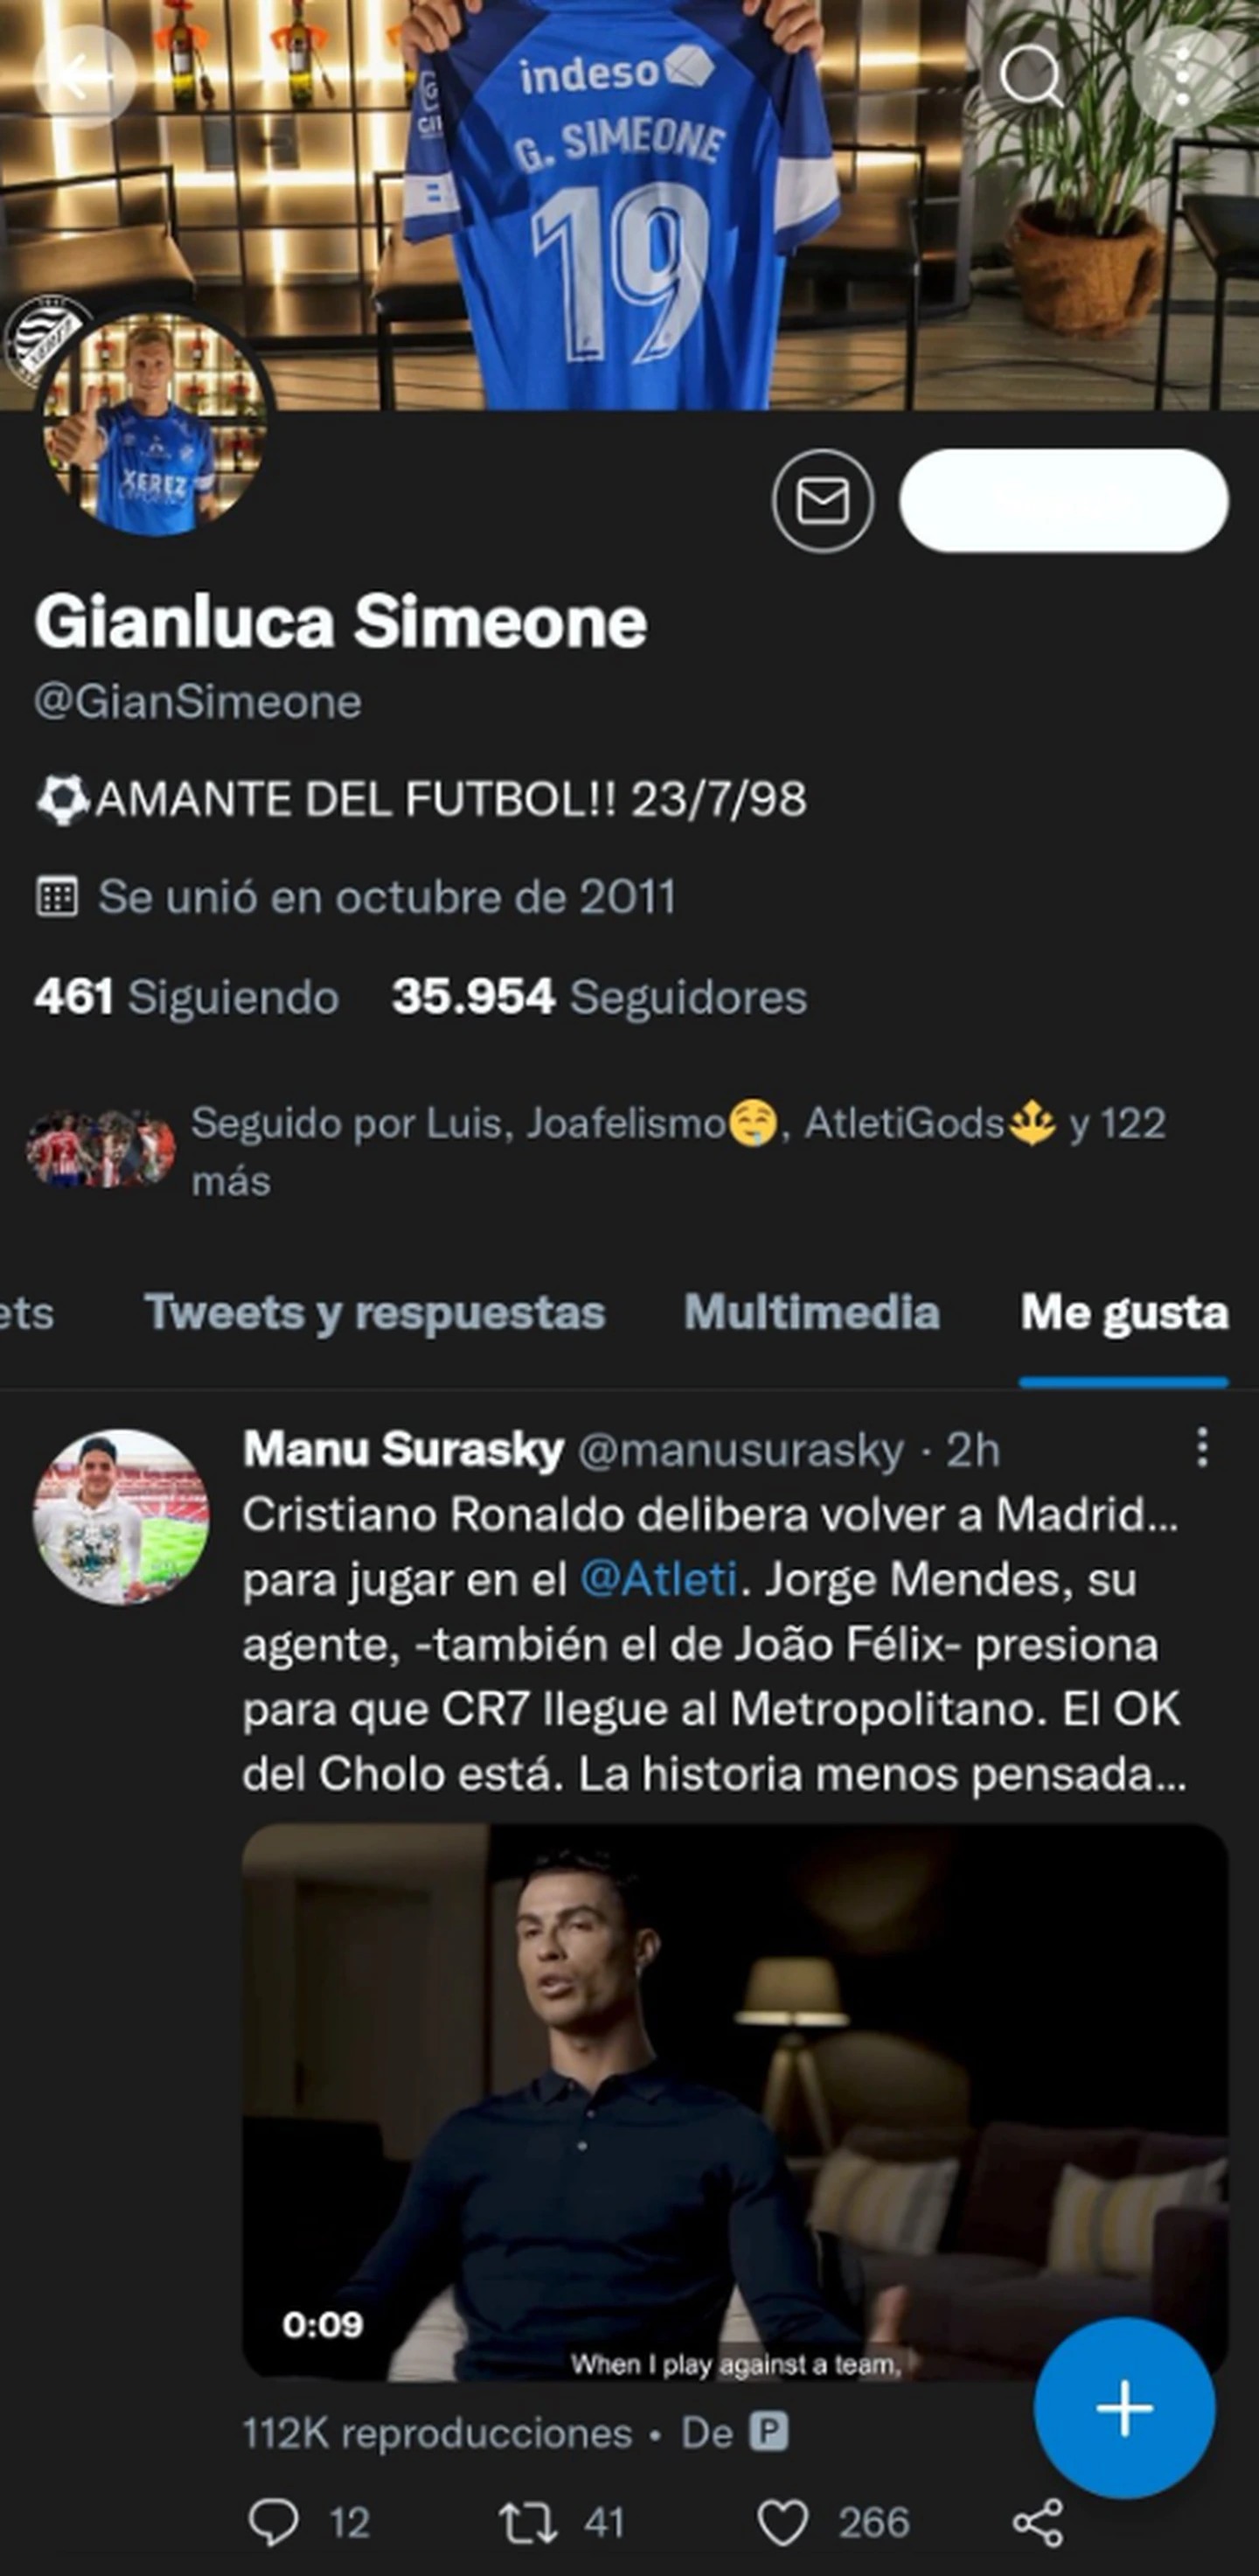 El like de Gianluca Simeone al tuit que menciona la posibilidad de que CR7 llegue al Atlético Madrid. El hijo del DT juega en el Xerez de España